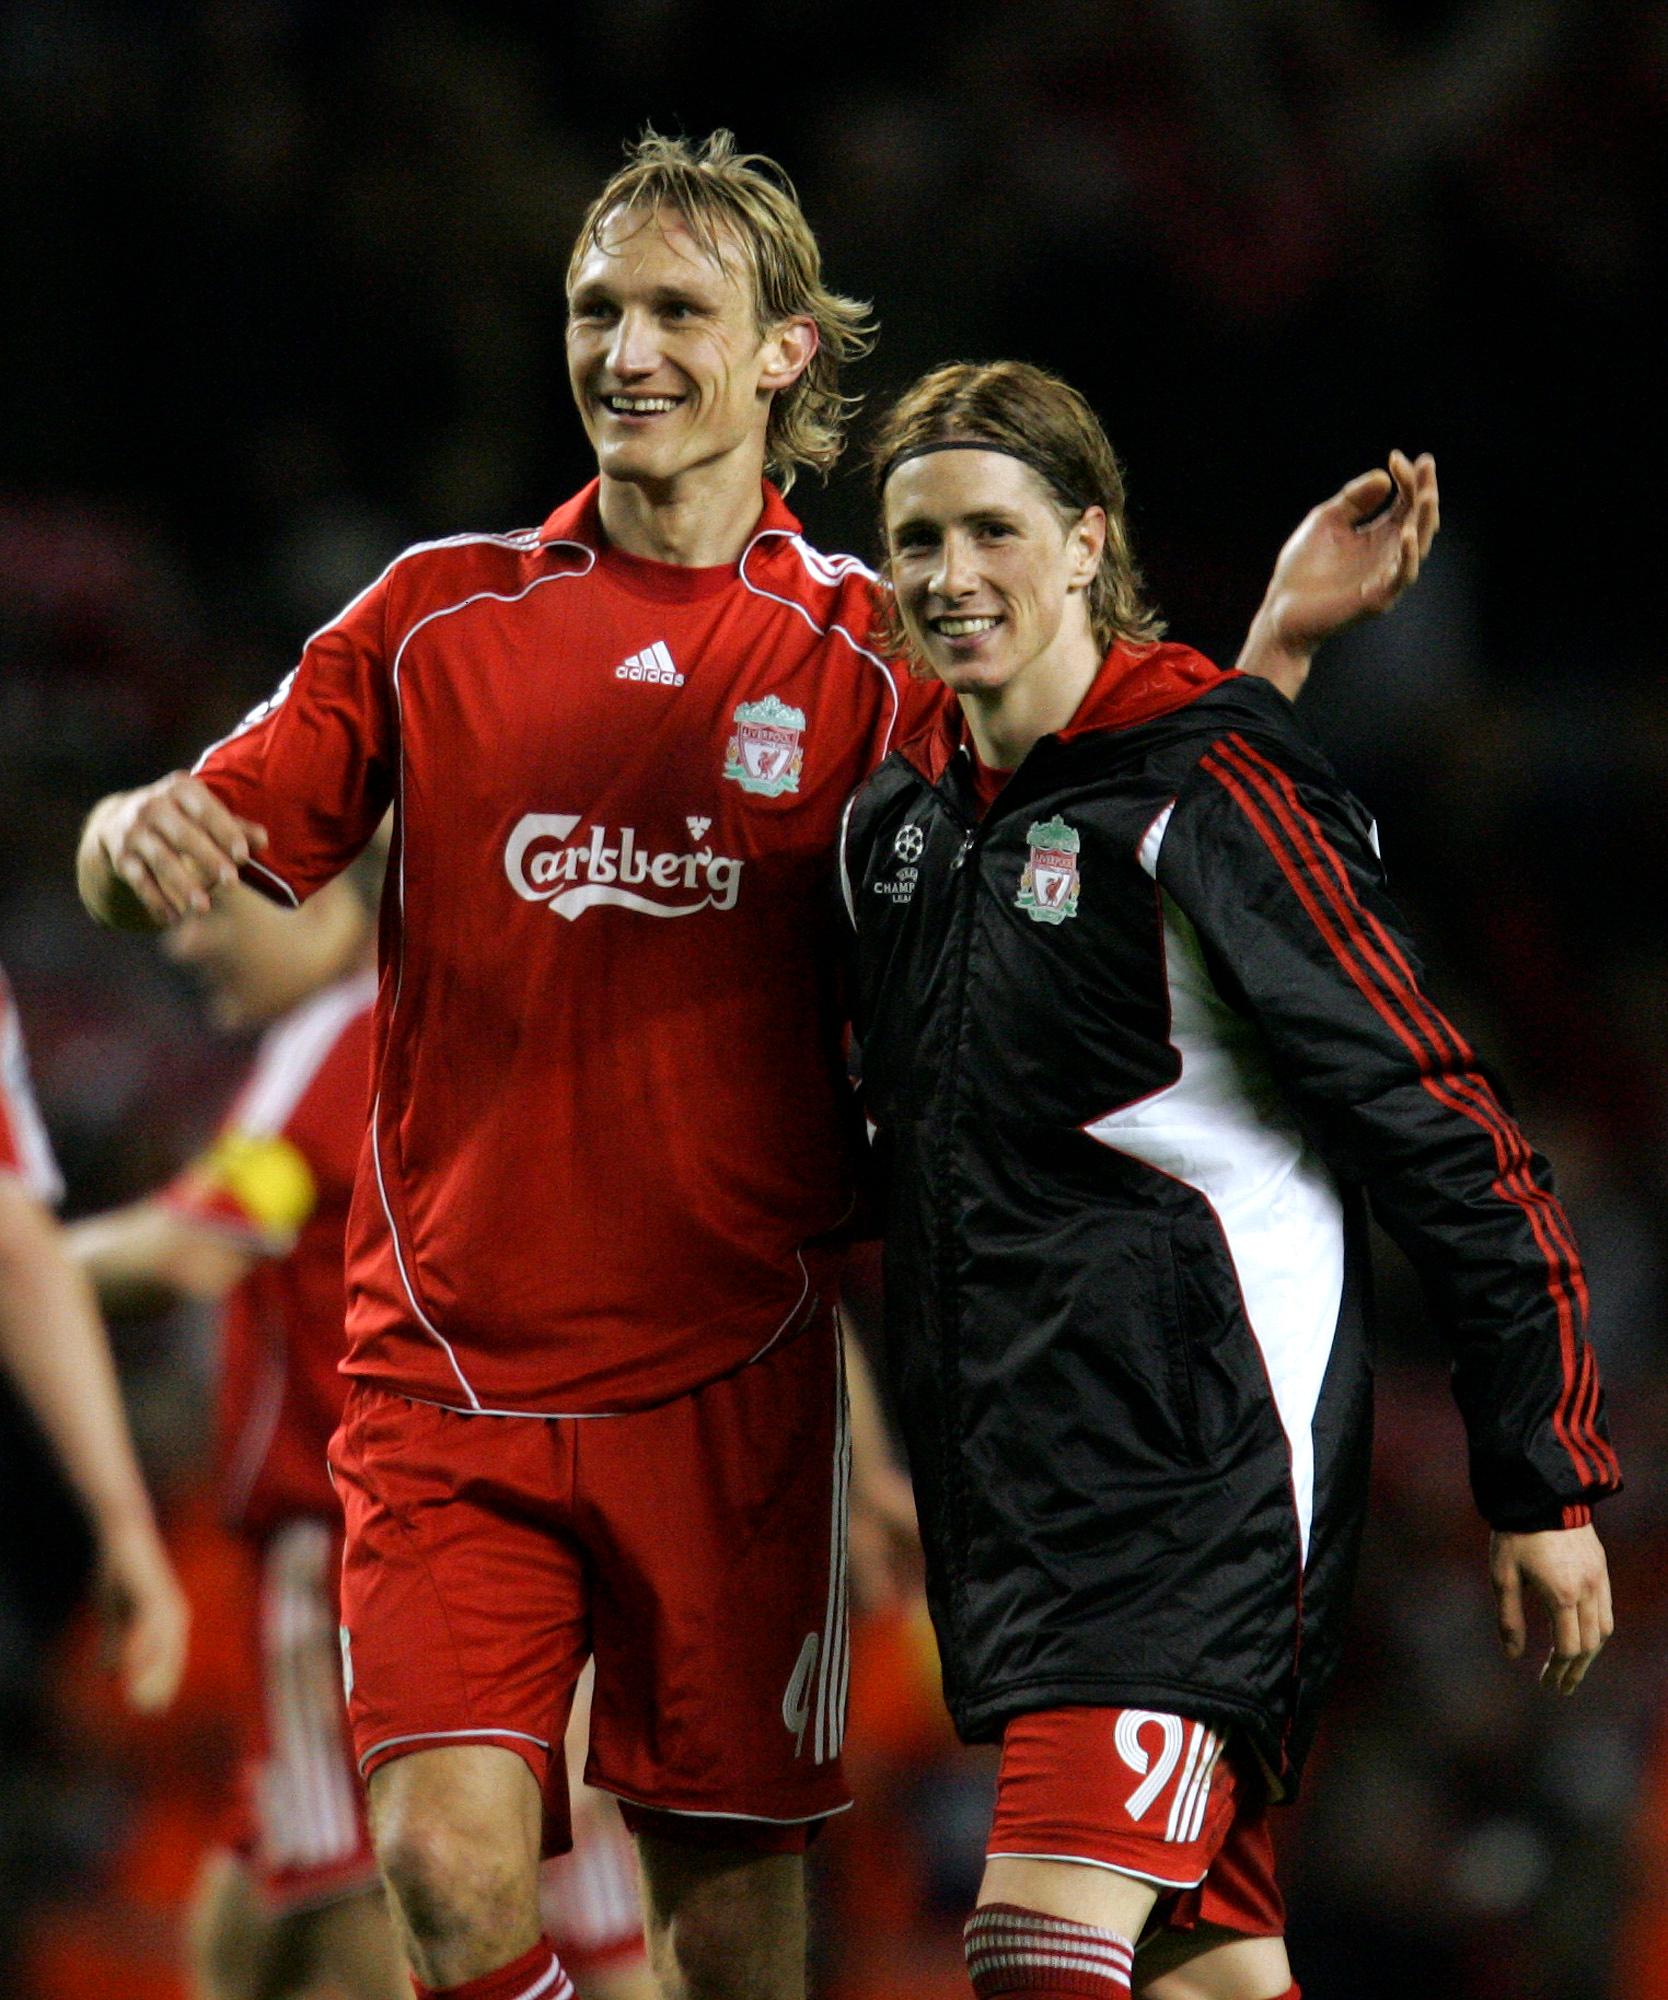 Samy Hyypiä tillsammans med Fernando Torres under tiden i Liverpool 